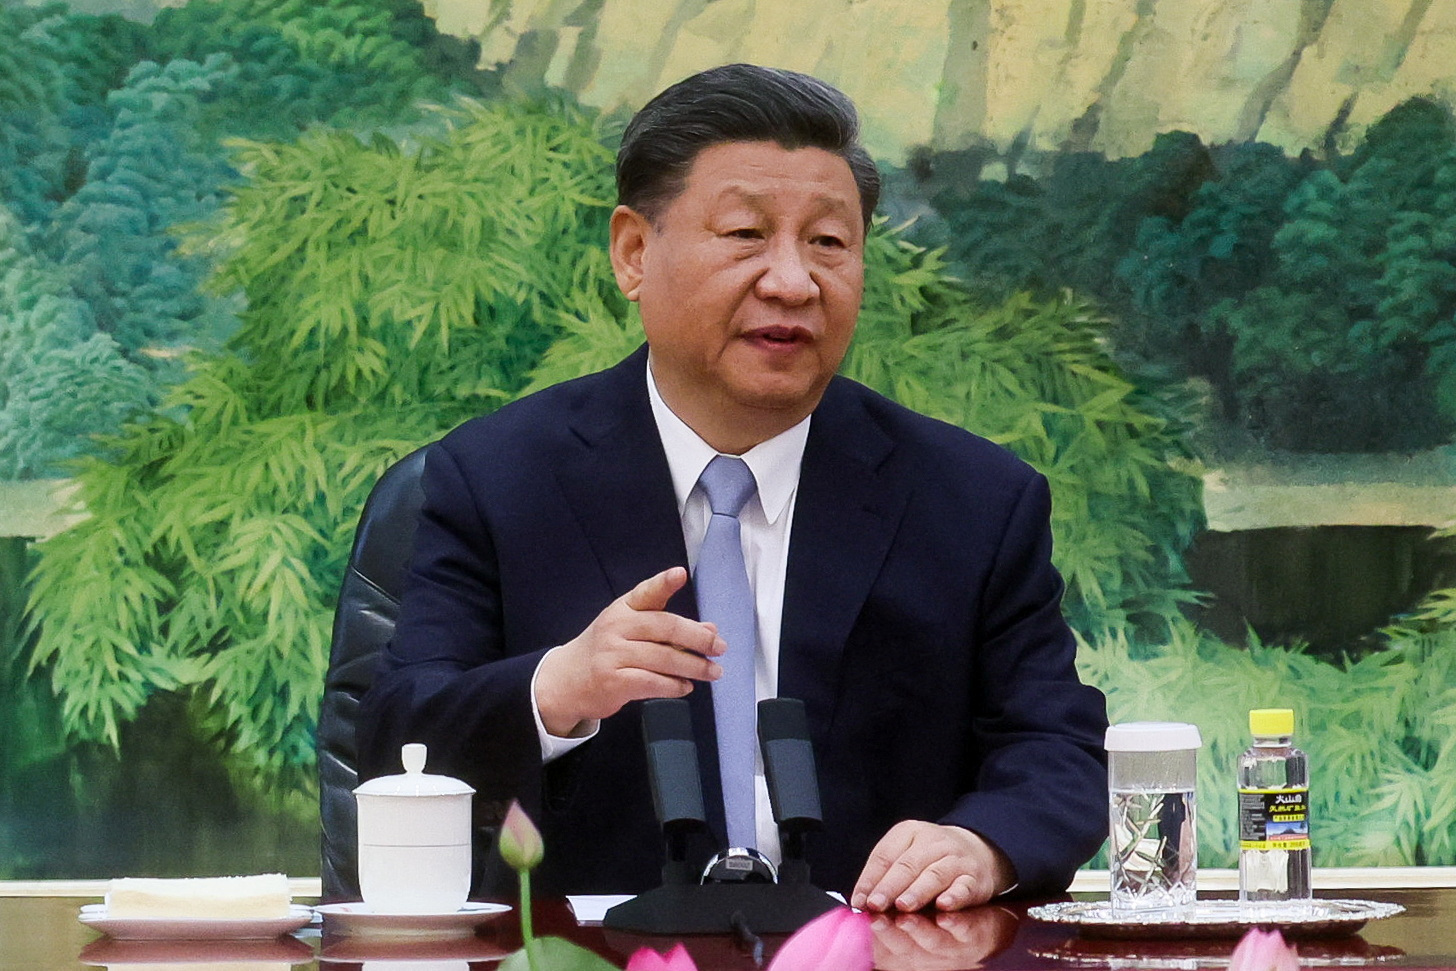 Οργή της Κίνας για τον Τζο Μπάιντεν που χαρακτήρισε δικτάτορα τον Σι Τζινπίνγκ